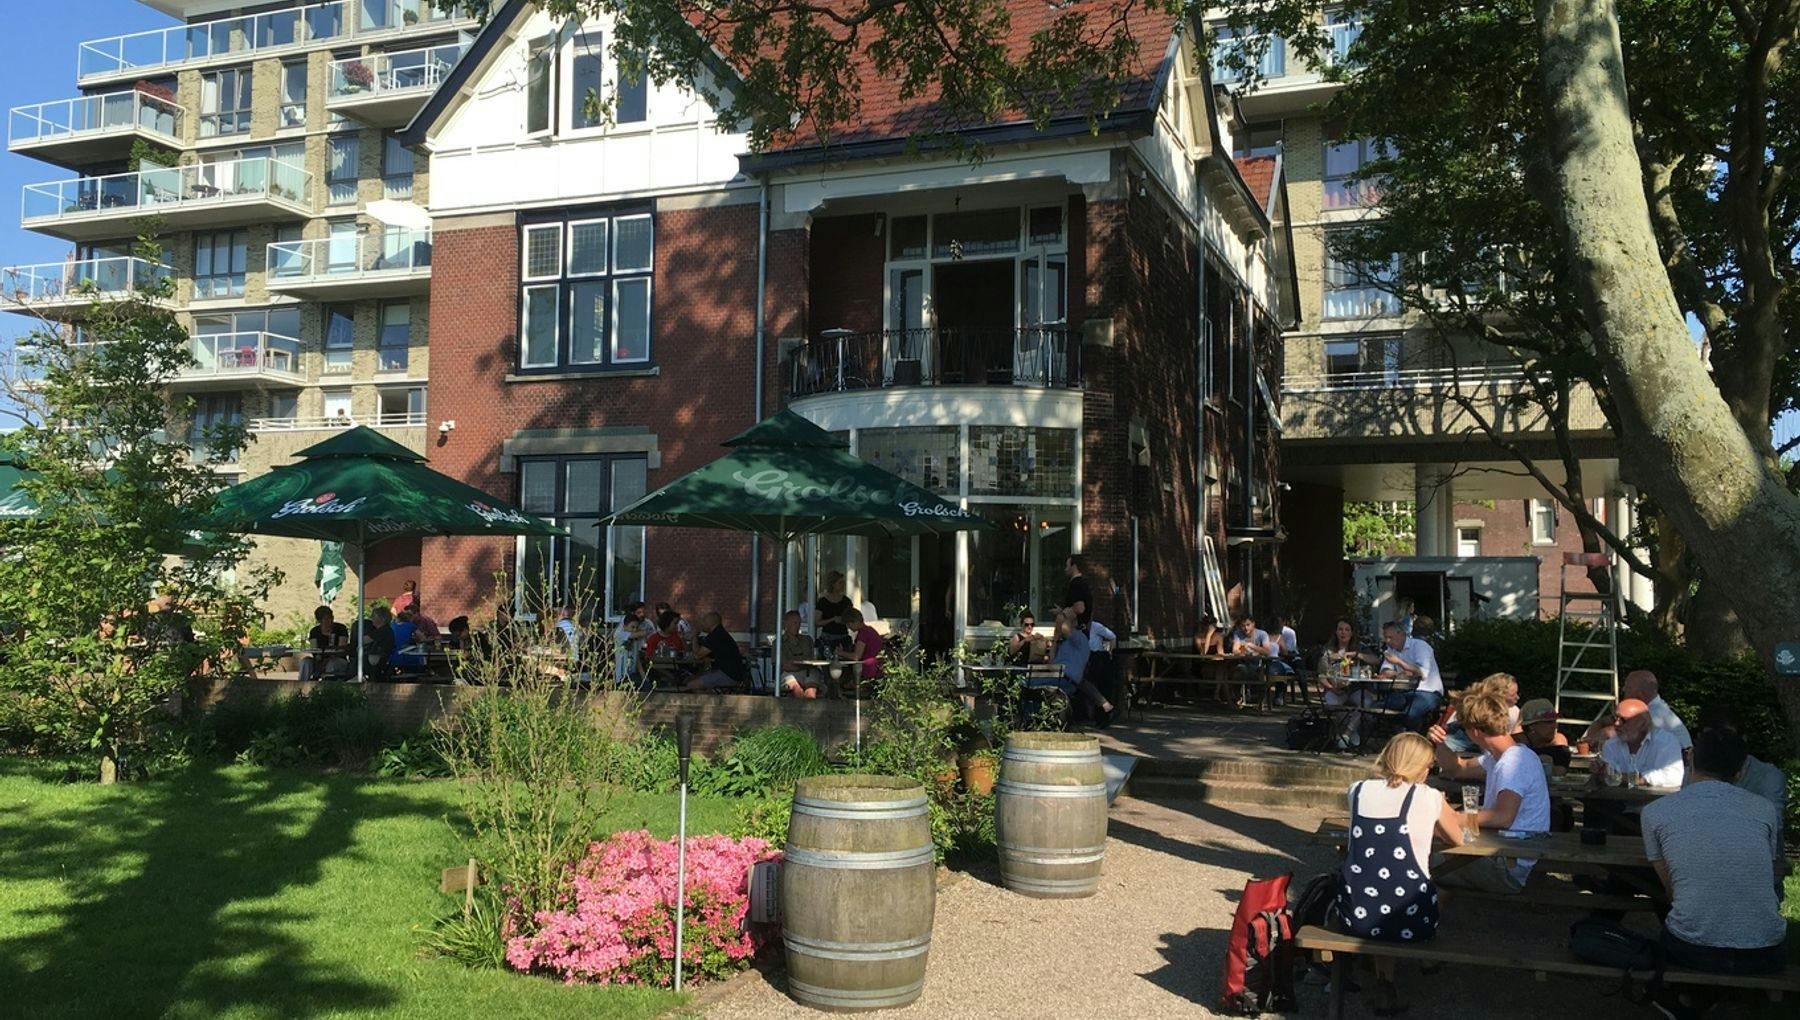 Restaurant Thuis aan de Amstel, Oost exterior, terrace with people